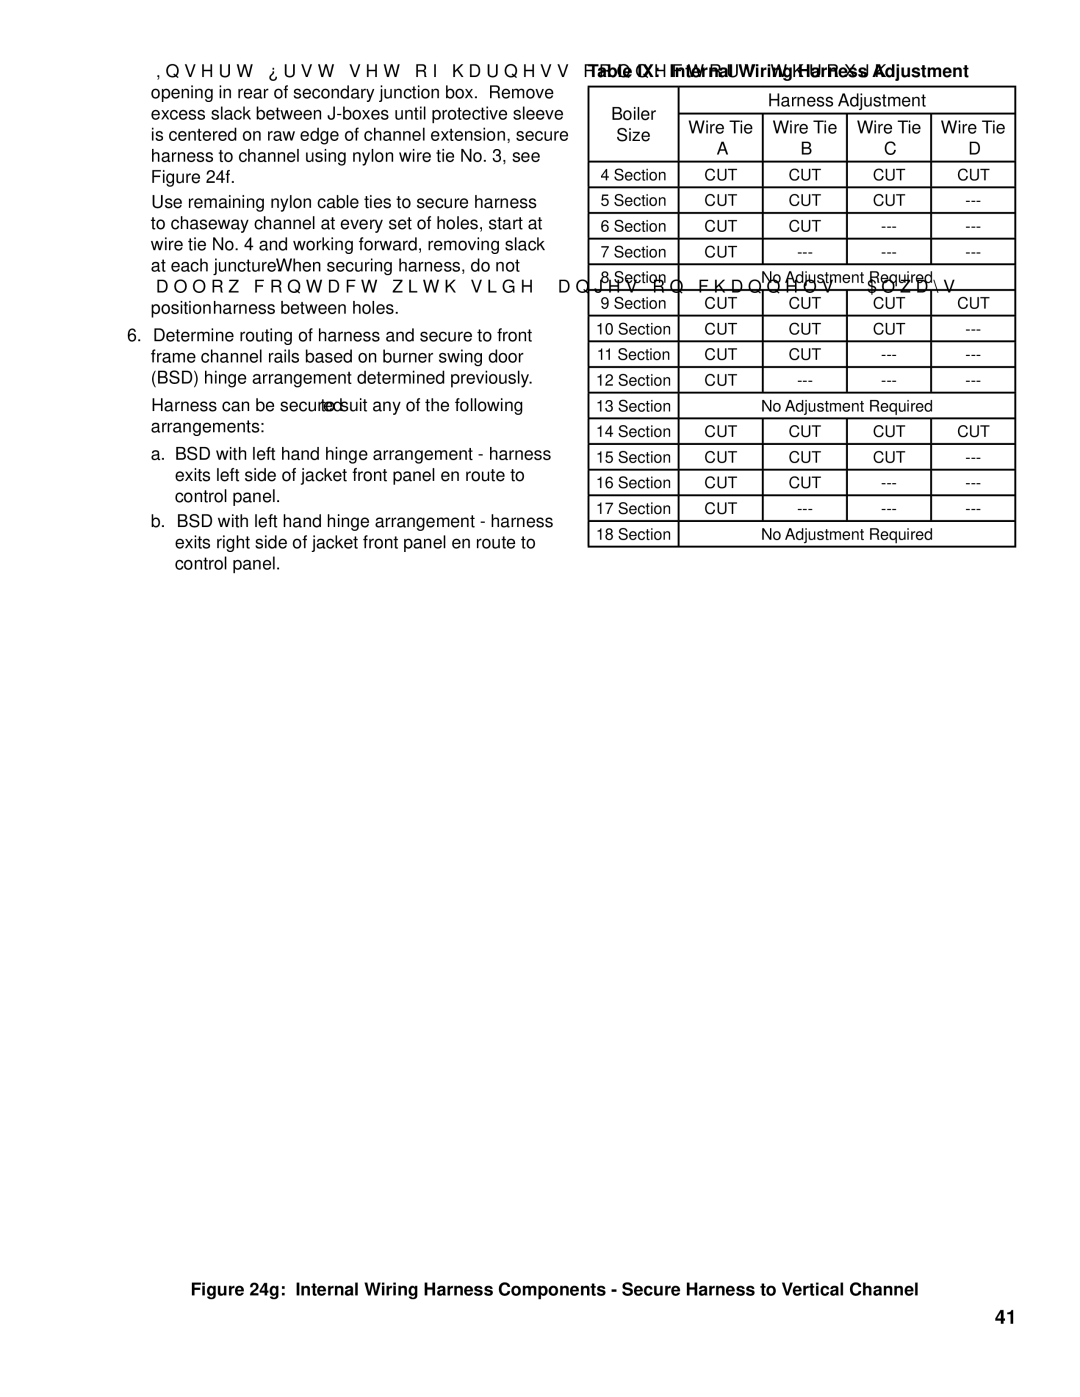 Burnham FM01FD00B manual Table IX Internal Wiring Harness Adjustment, ‘B’ ‘C’ ‘D’ 